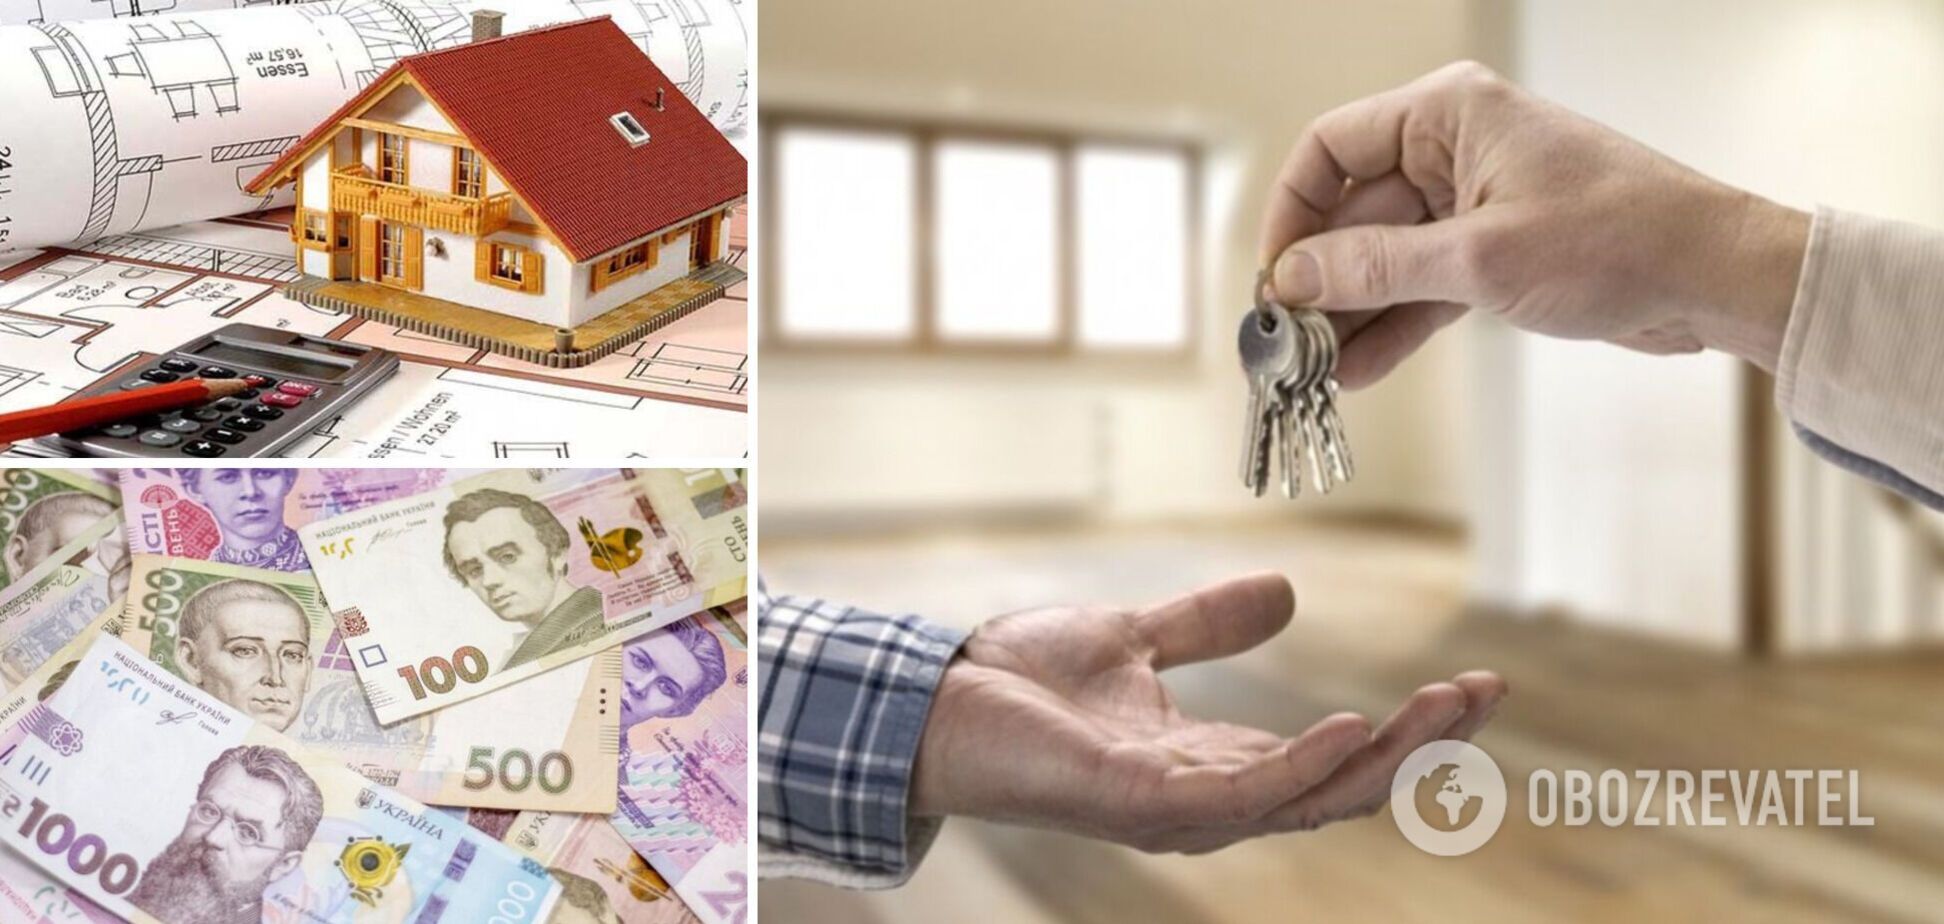 Ціни на квартири в Україні зростуть у 2022 році